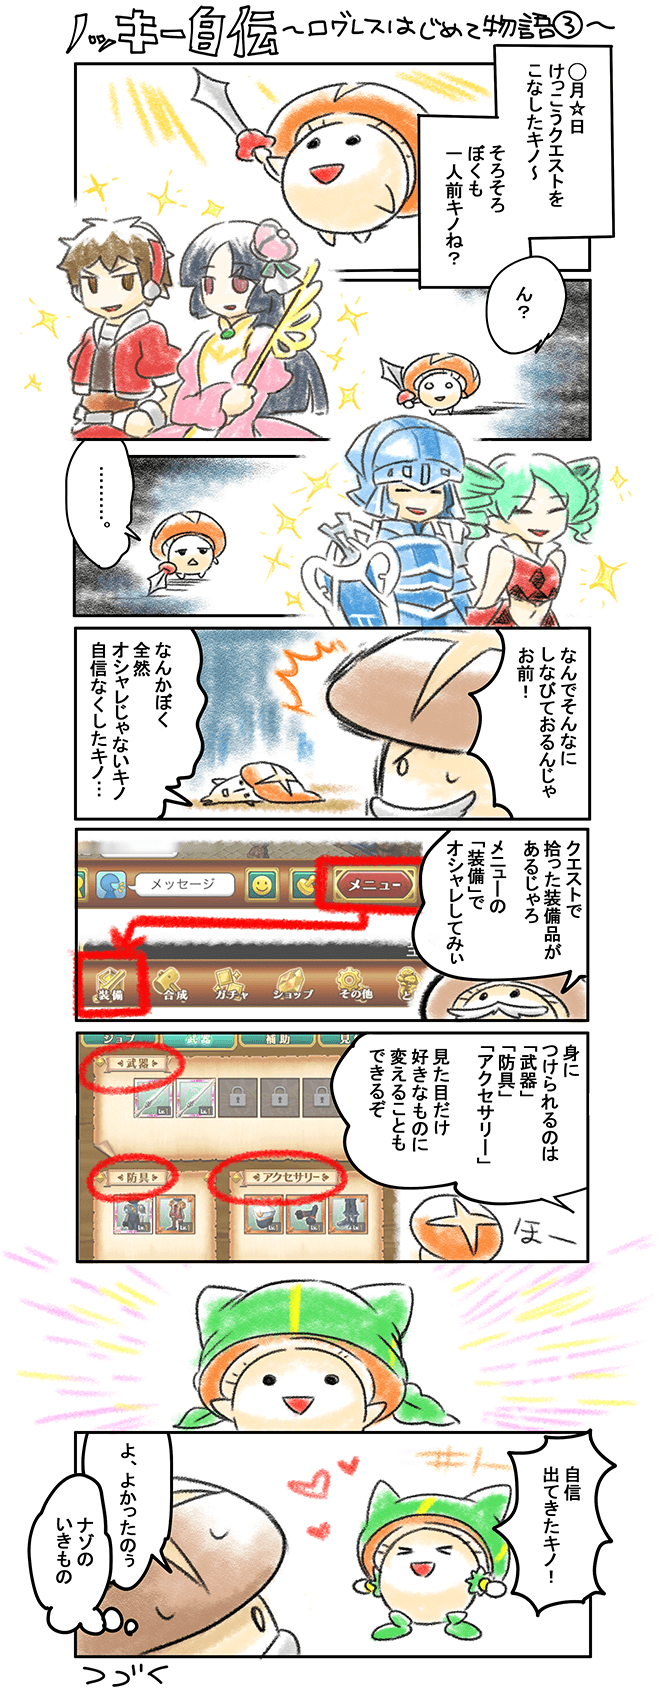 キノ自伝 〜ログレスはじめて物語3〜